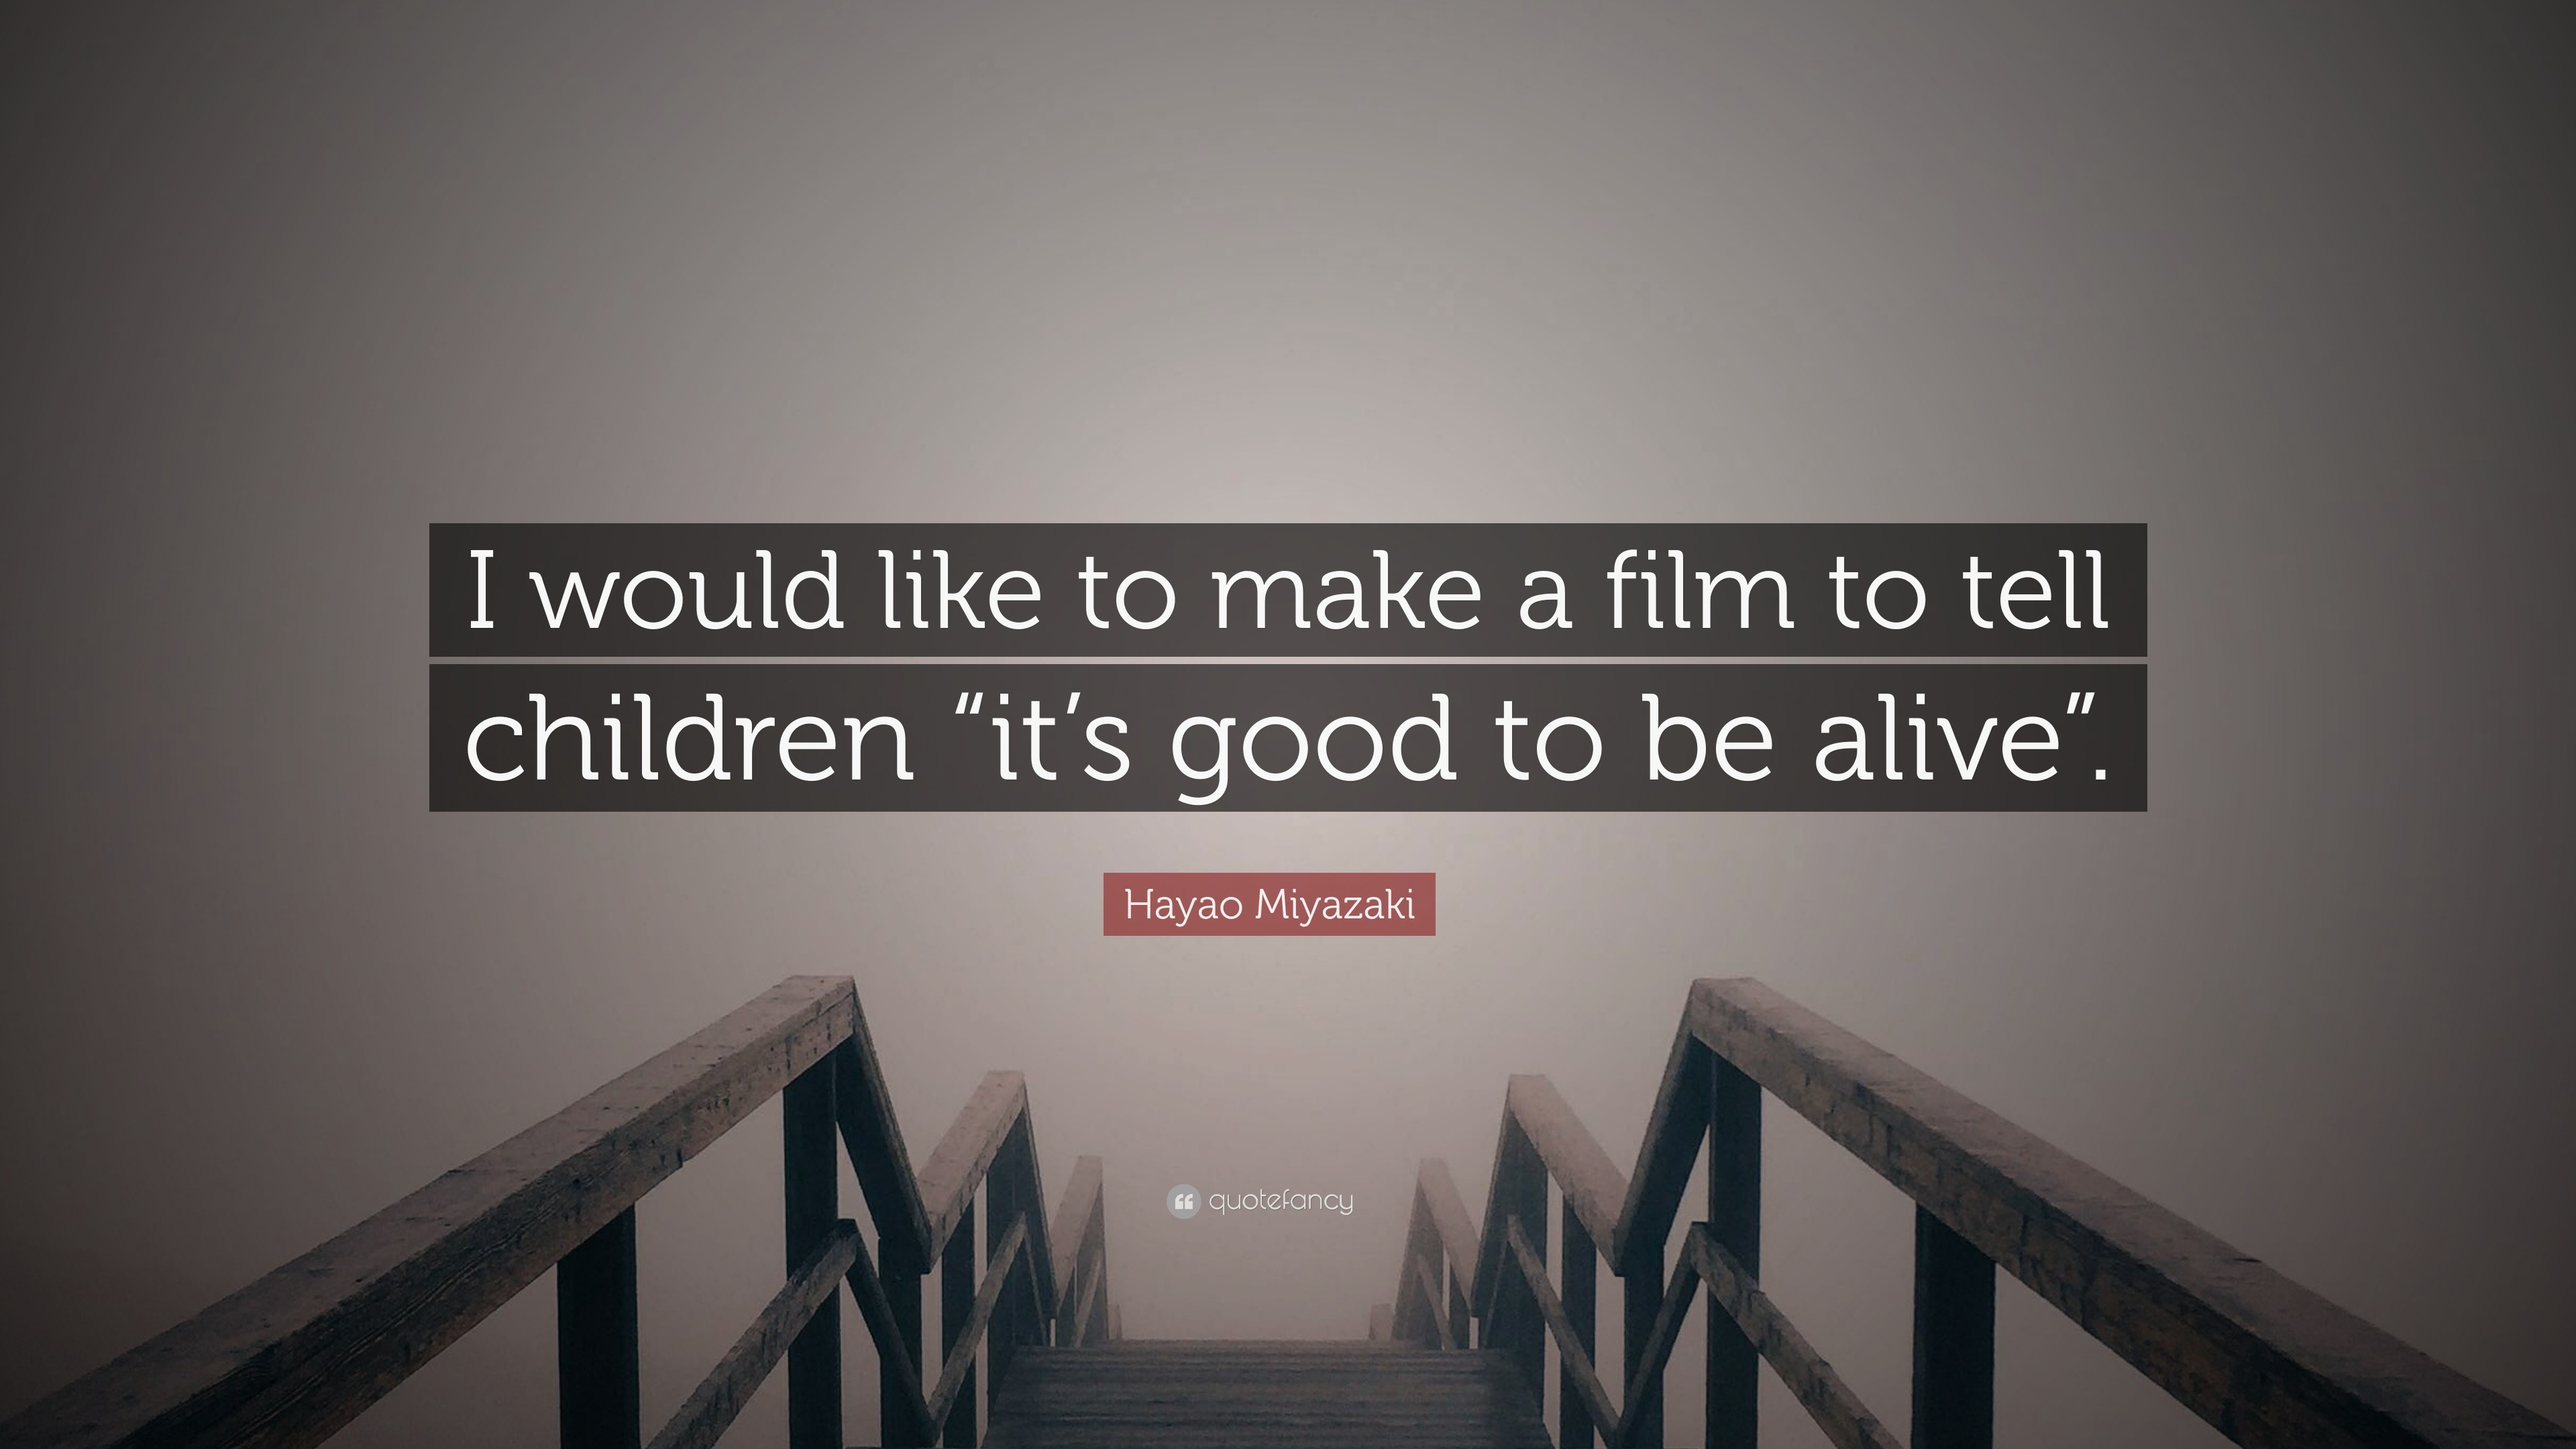 نقـآشآت الأنمي [ العدد 71 ] لن يستشعر أحد لذة الفوز ما لم يذق مرارة الهزيمة - صفحة 24 1732550-Hayao-Miyazaki-Quote-I-would-like-to-make-a-film-to-tell-children